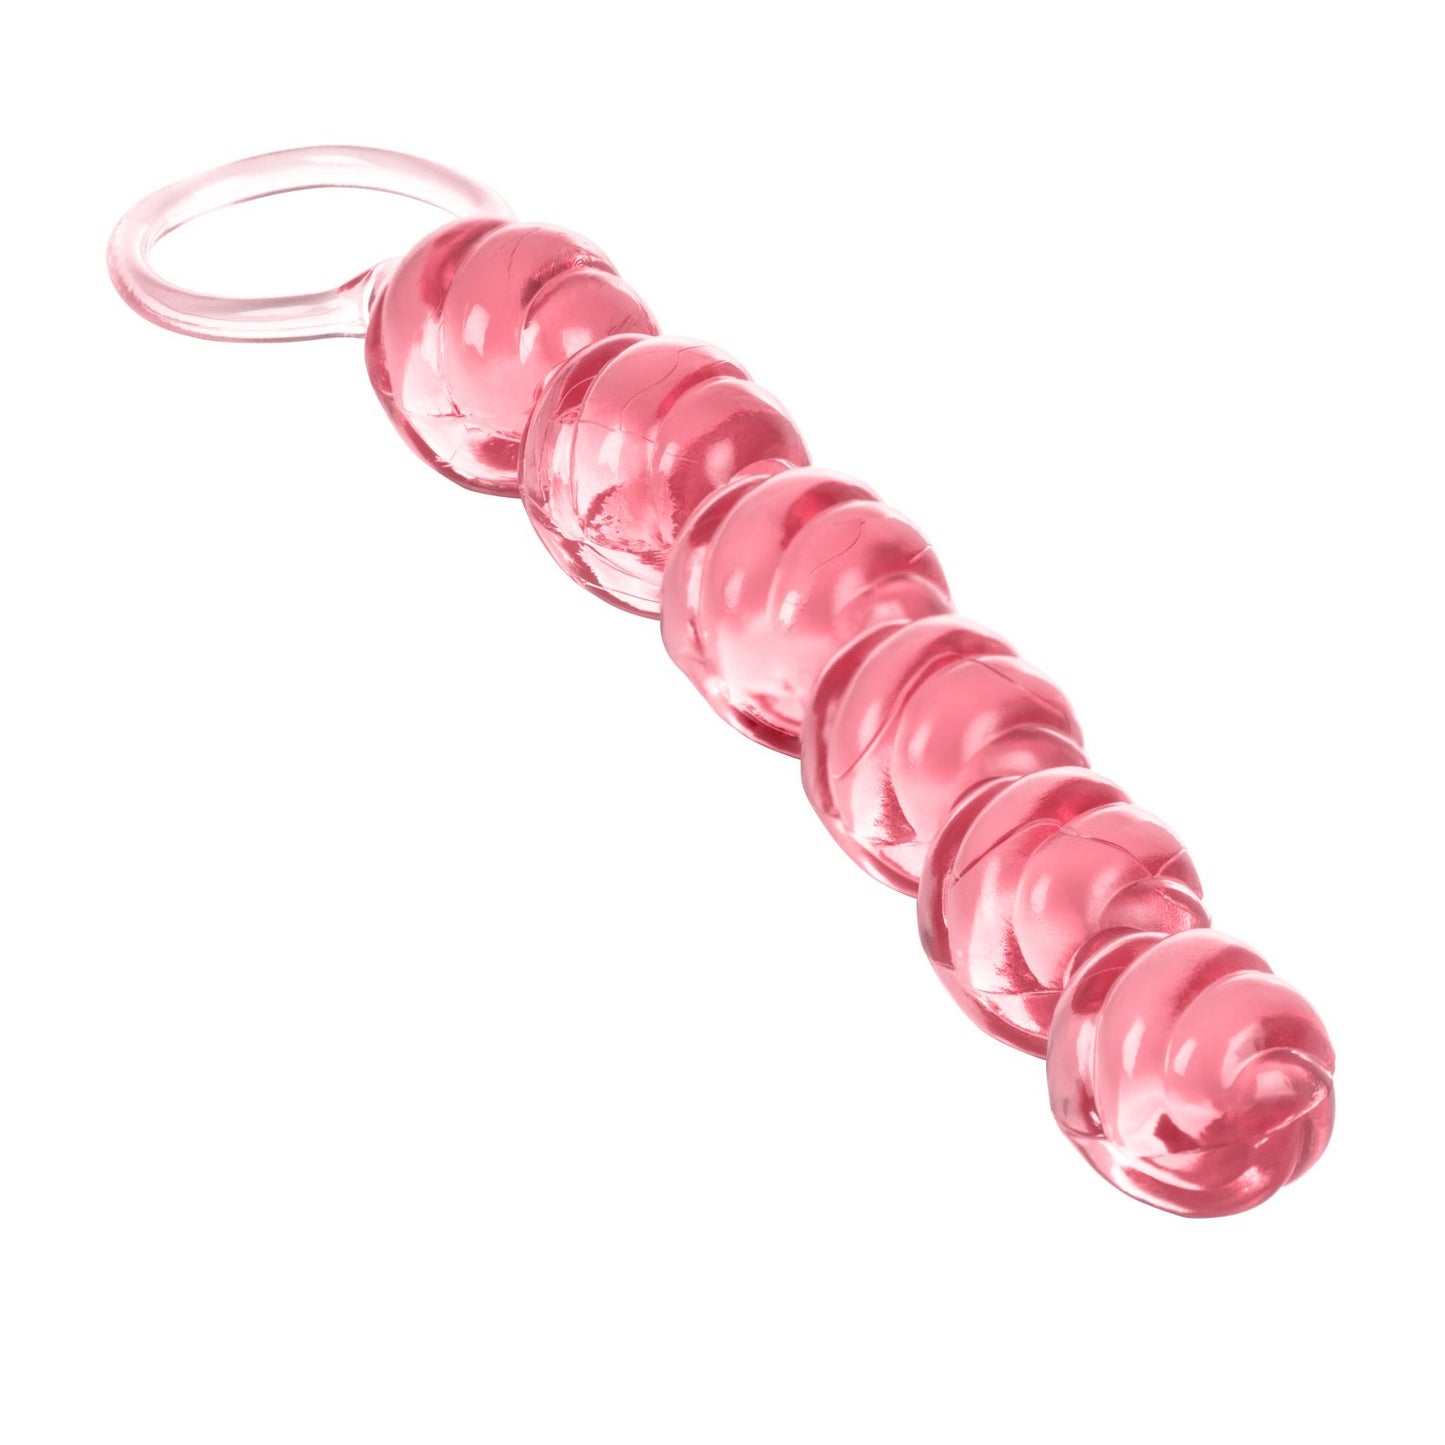 Swirl Pleasure Beads